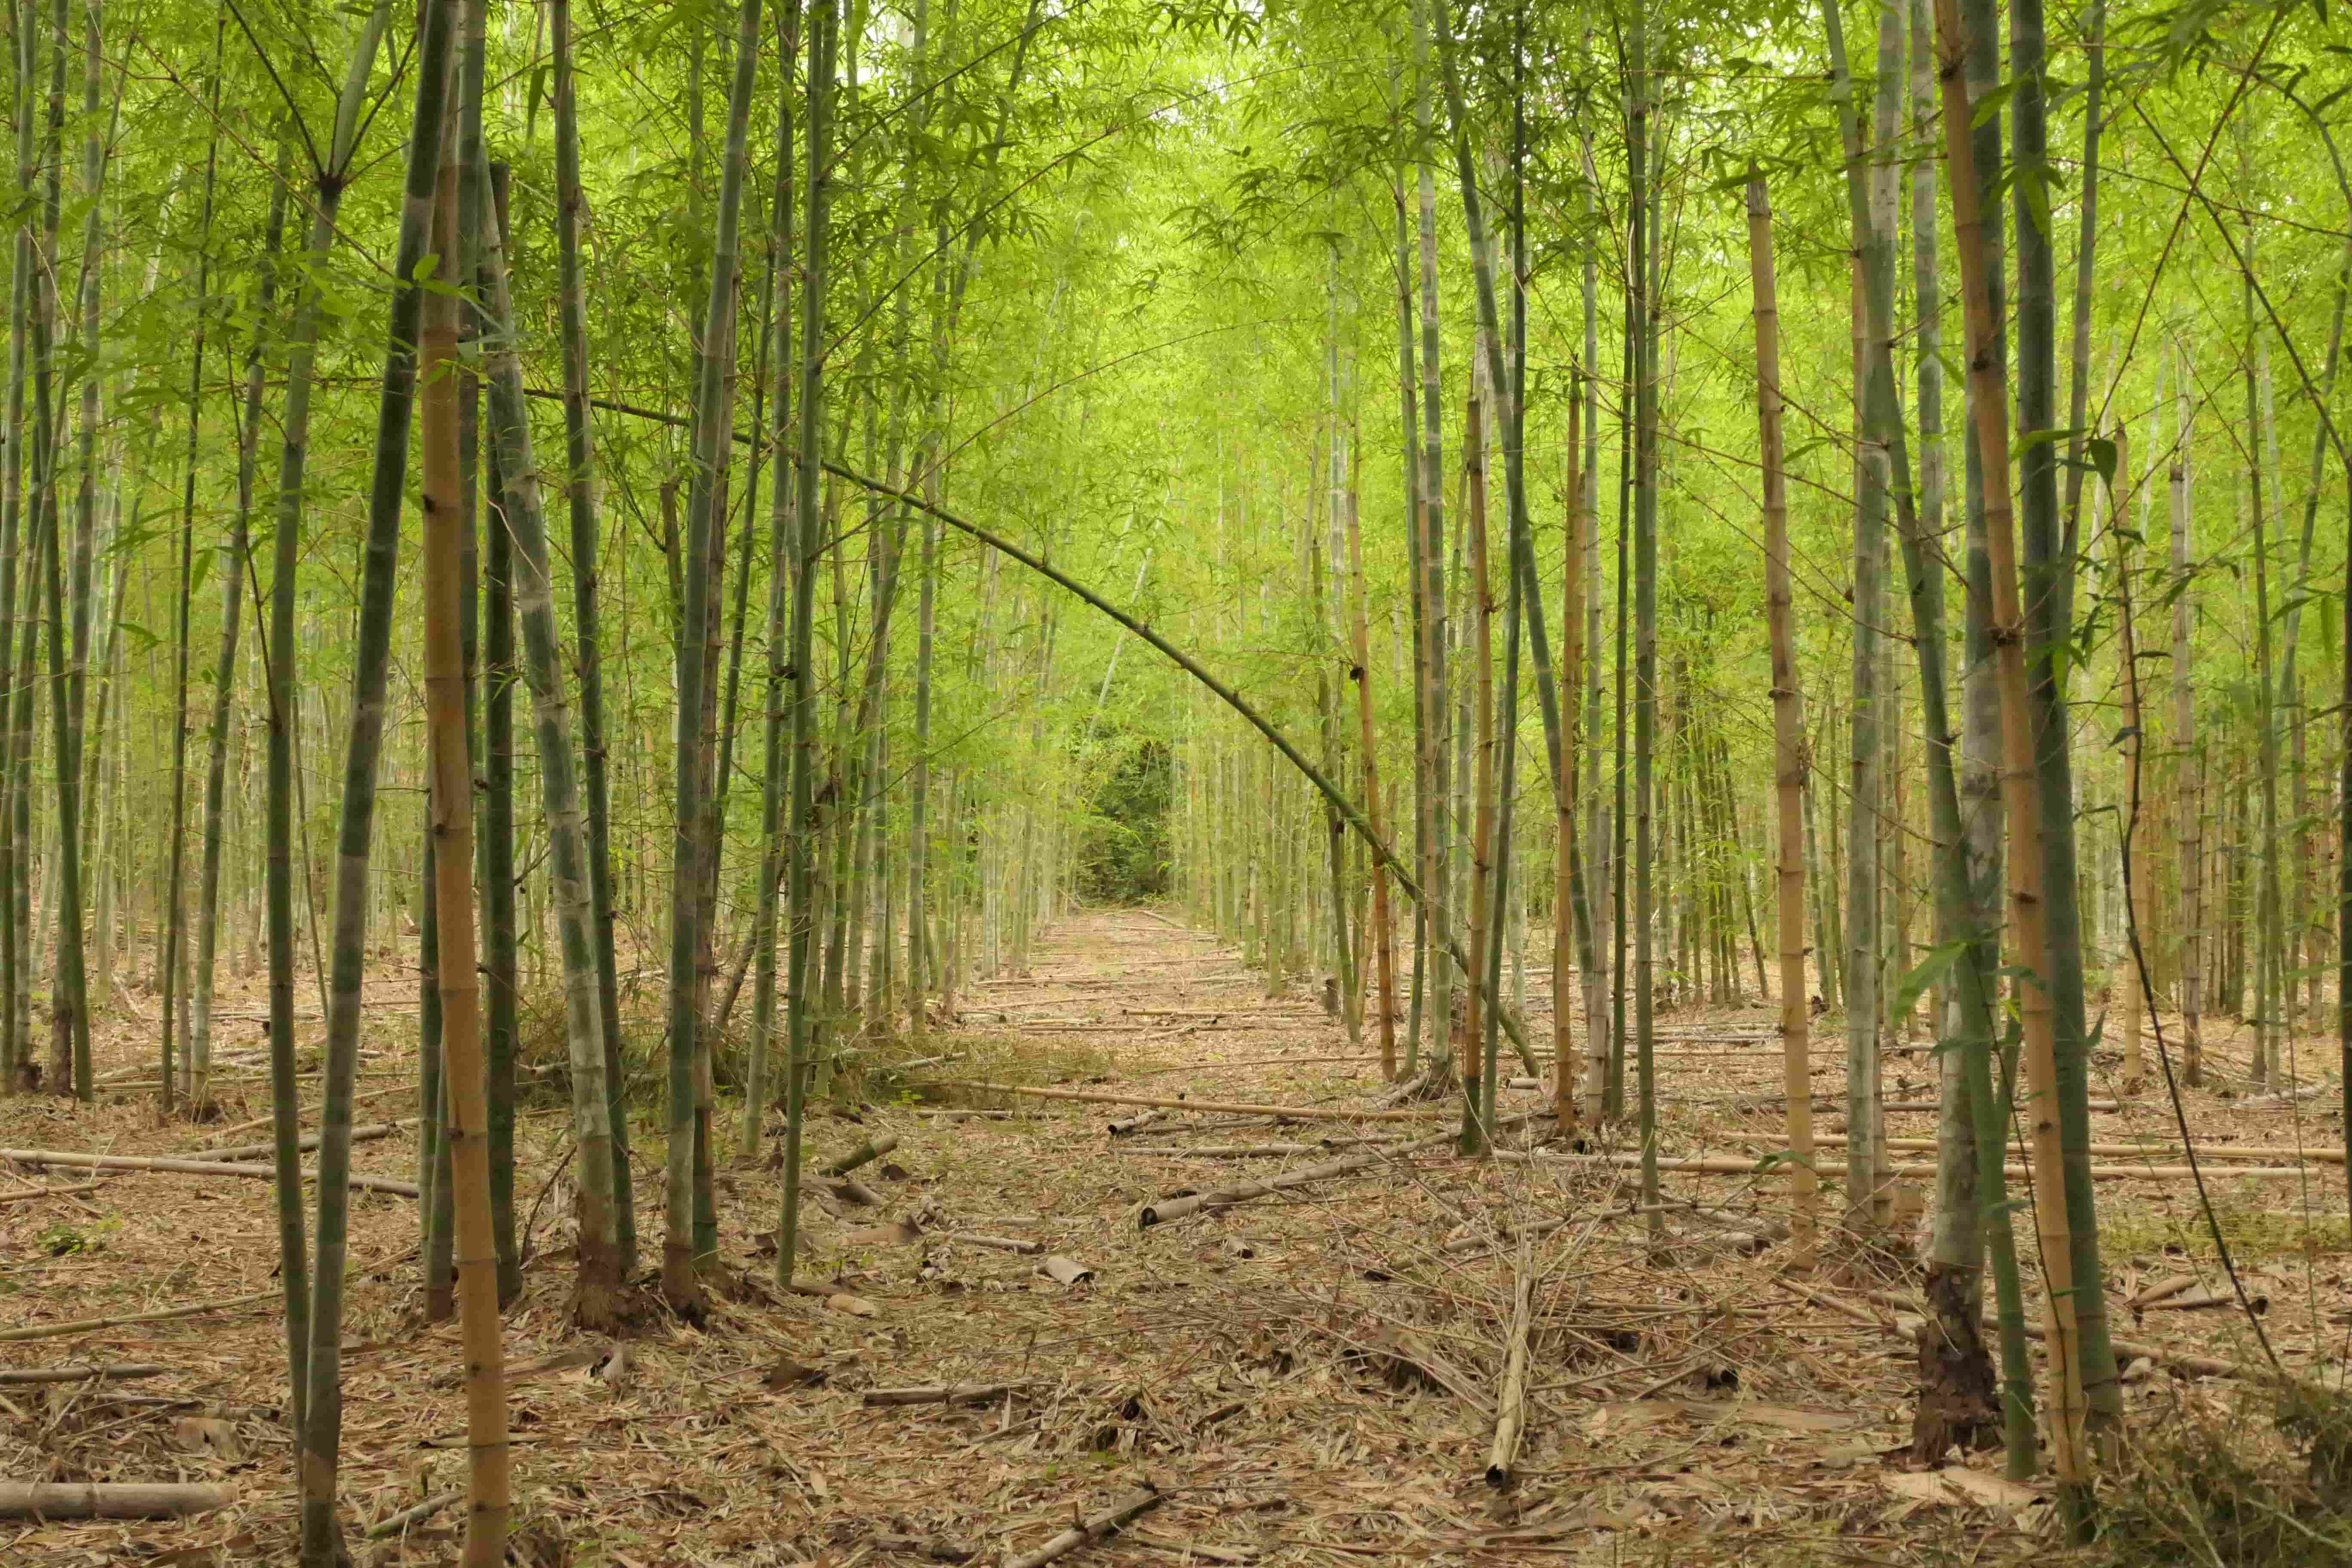 Bamboo trees